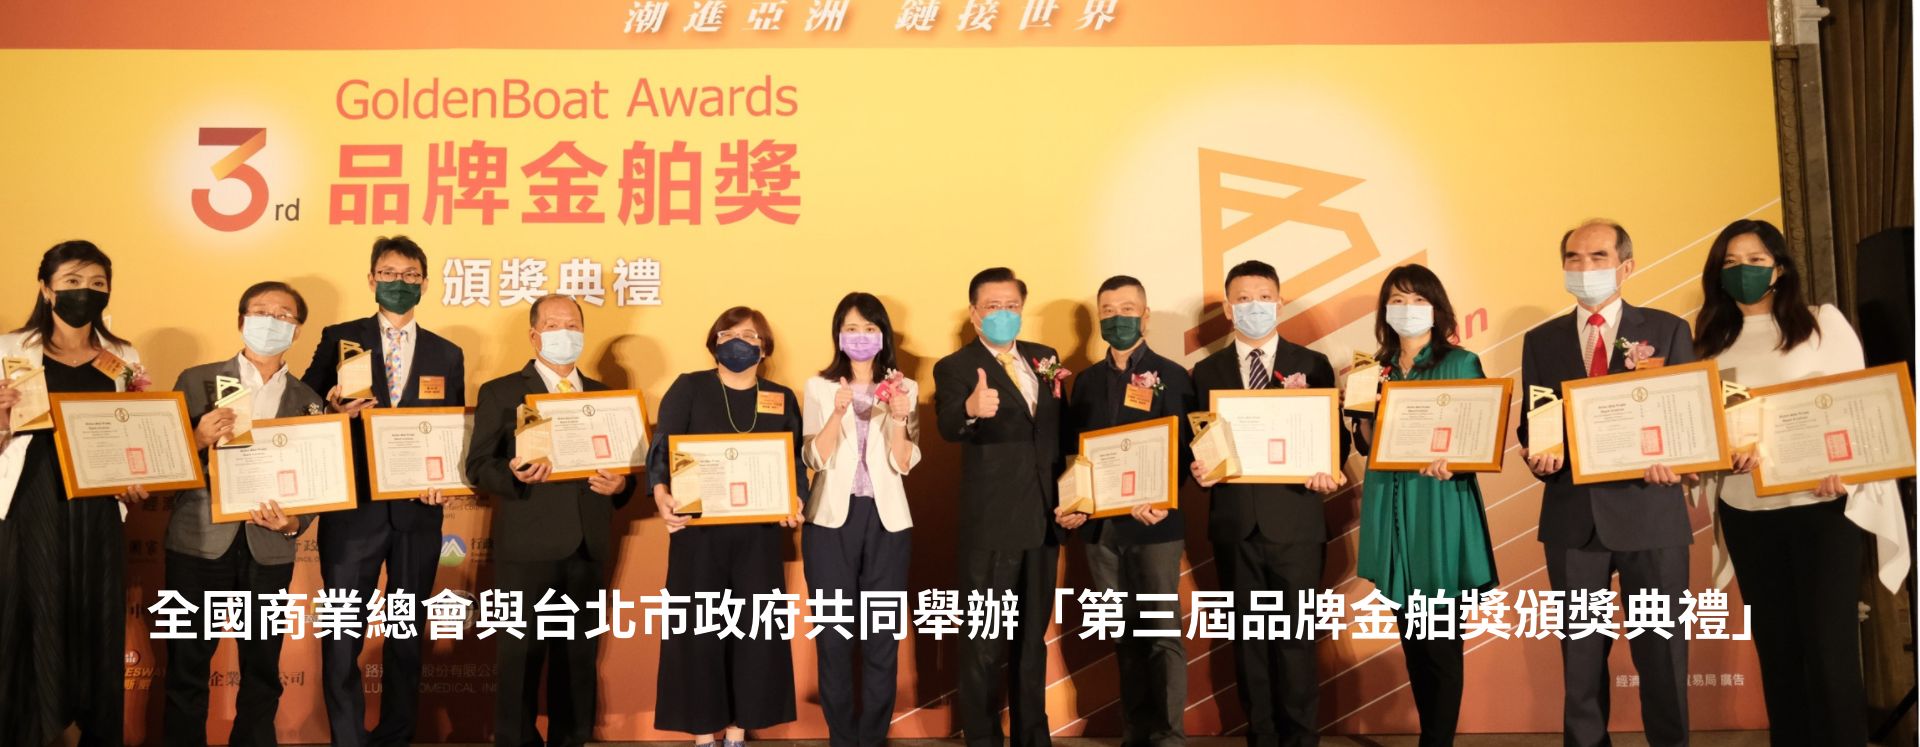 全國商業總會與台北市政府共同舉辦「第三屆品牌金舶獎頒獎典禮」